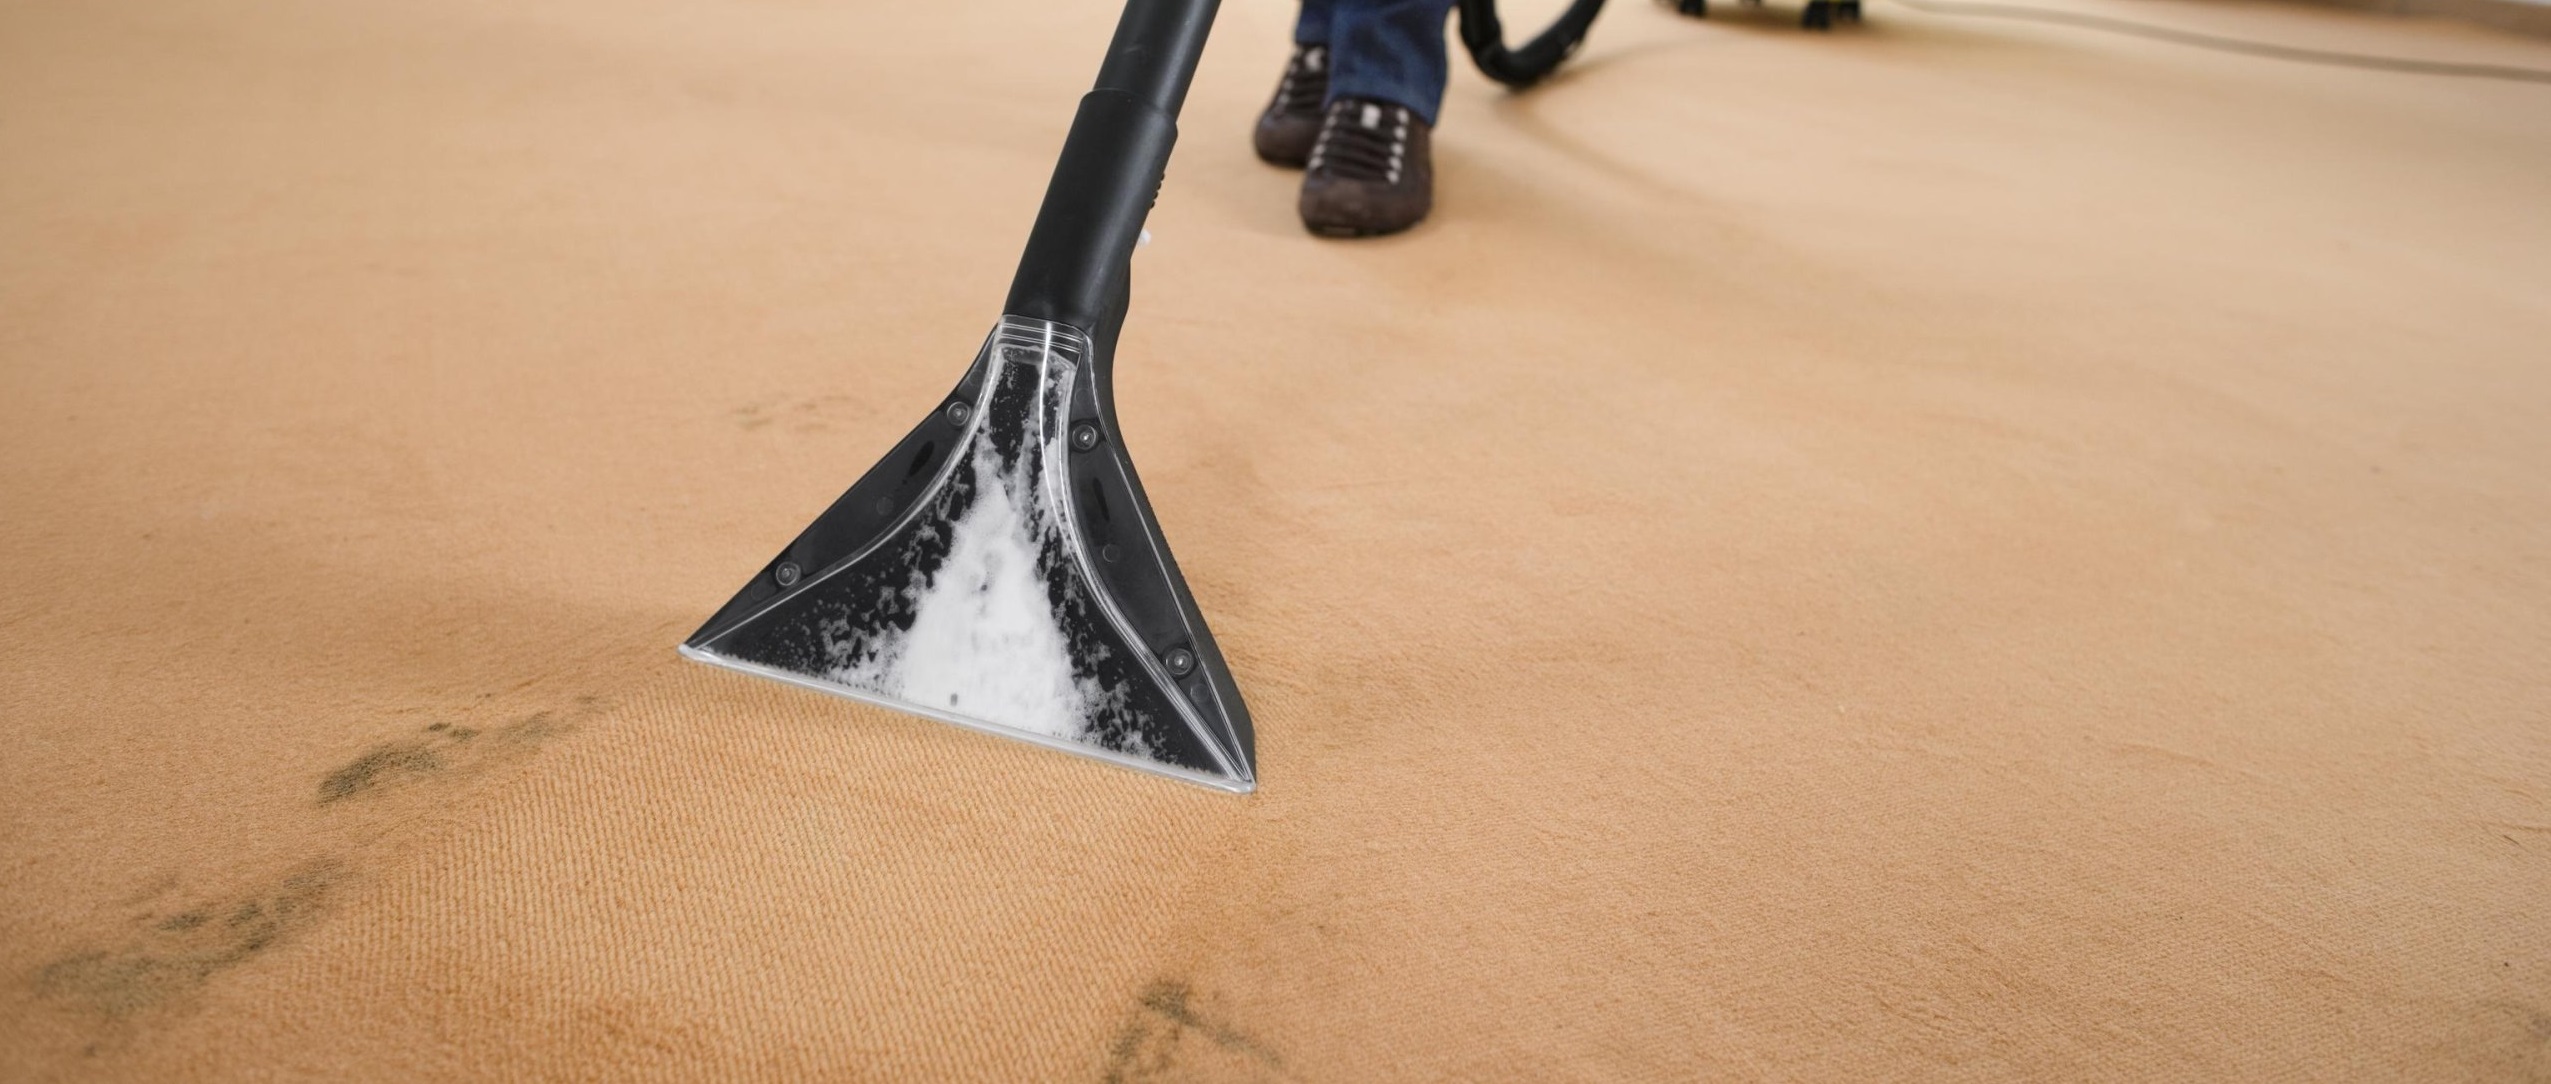 wet-carpet-drying